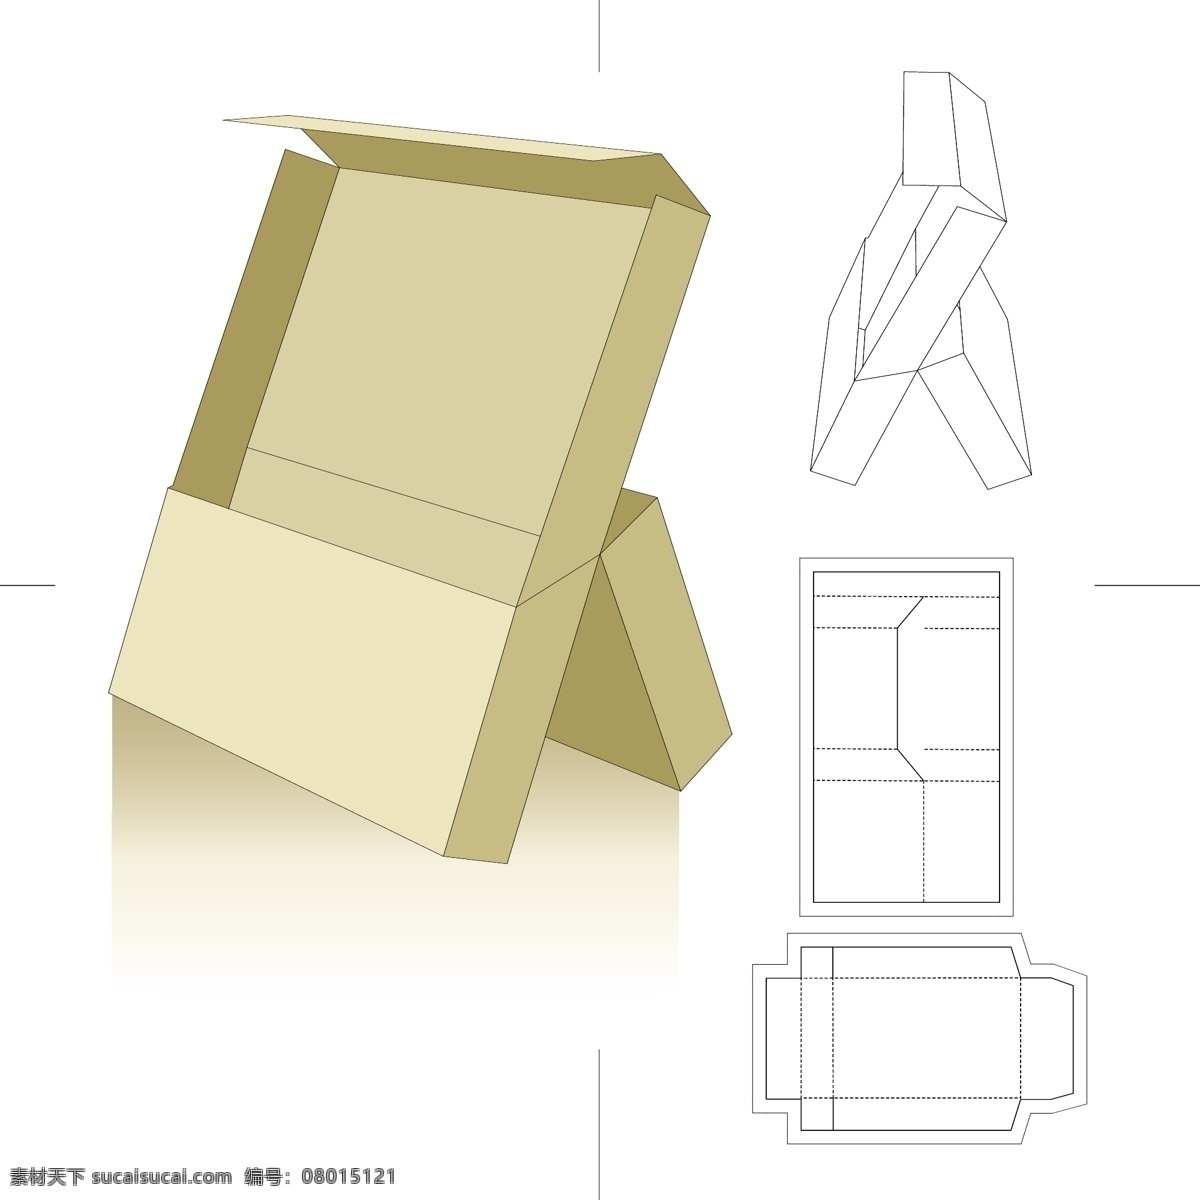 包装设计 包装盒模板 外箱 纸盒 纸箱 外包装 包装盒效果图 钢刀线 矢量素材 白色